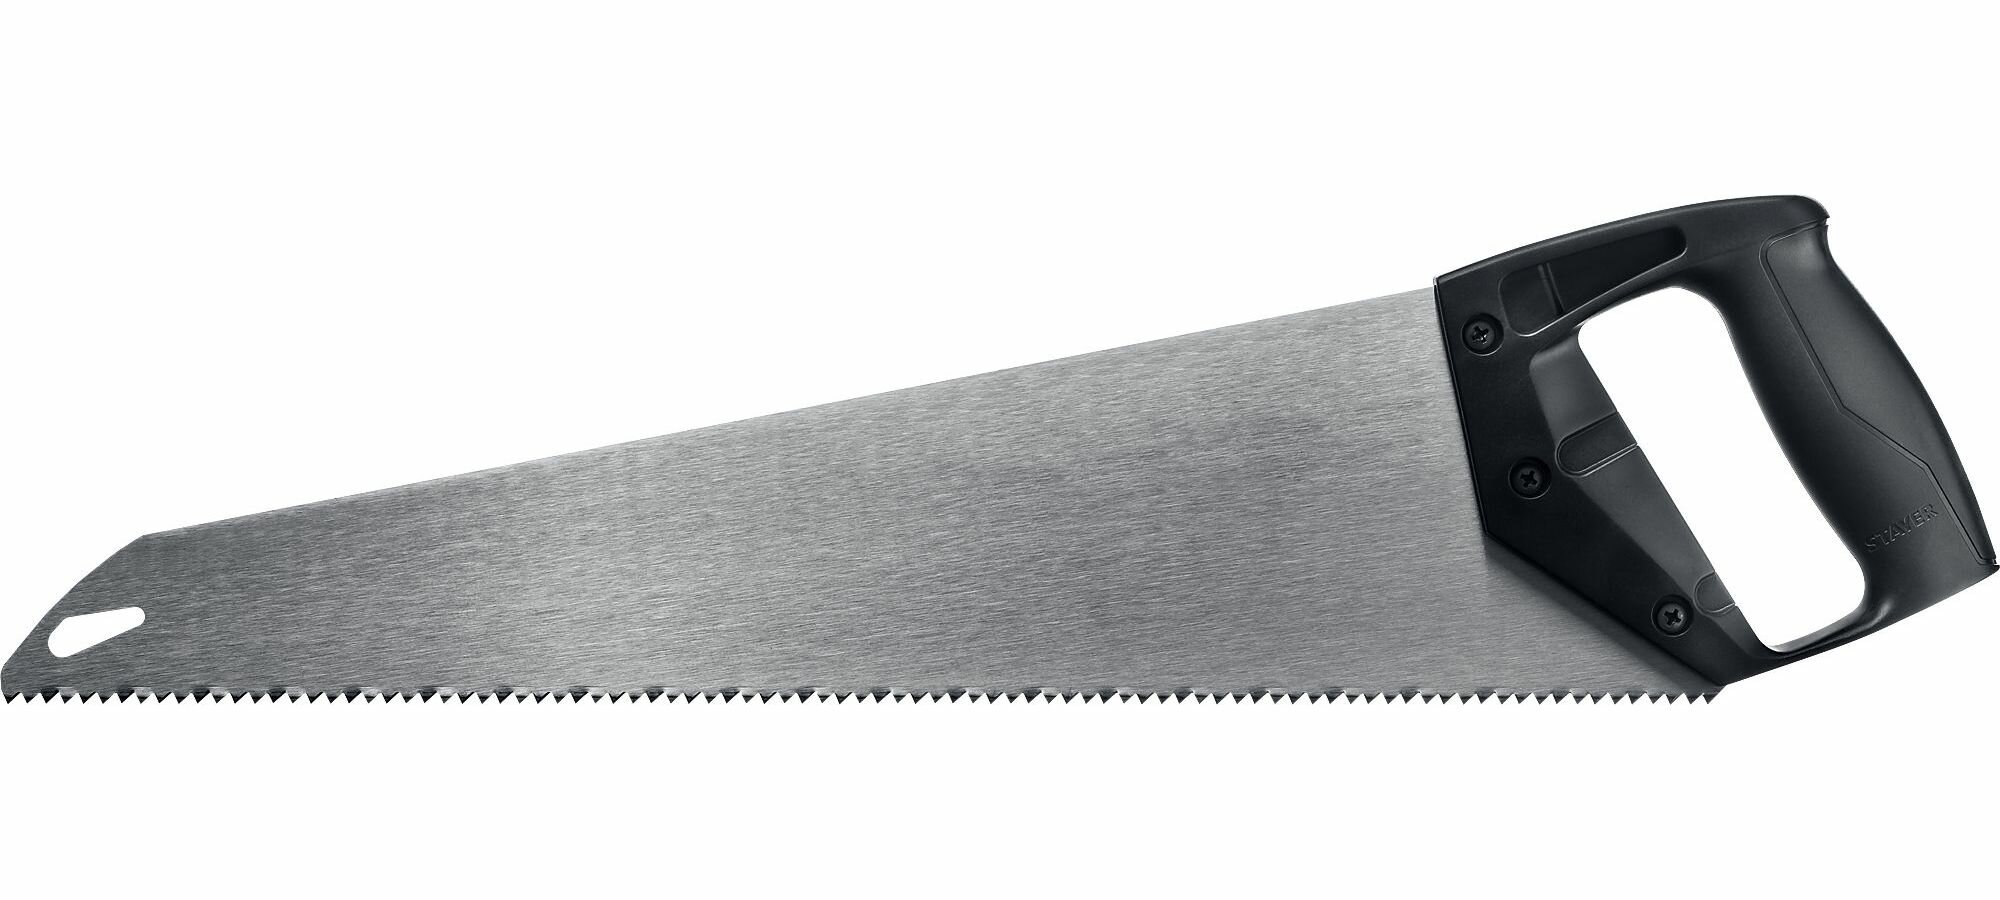 Ножовка ударопрочная (пила) ? TopCut? 450 мм, 5 TPI, быстрый рез поперек волокон, для крупных и средних заготовок, STAYER